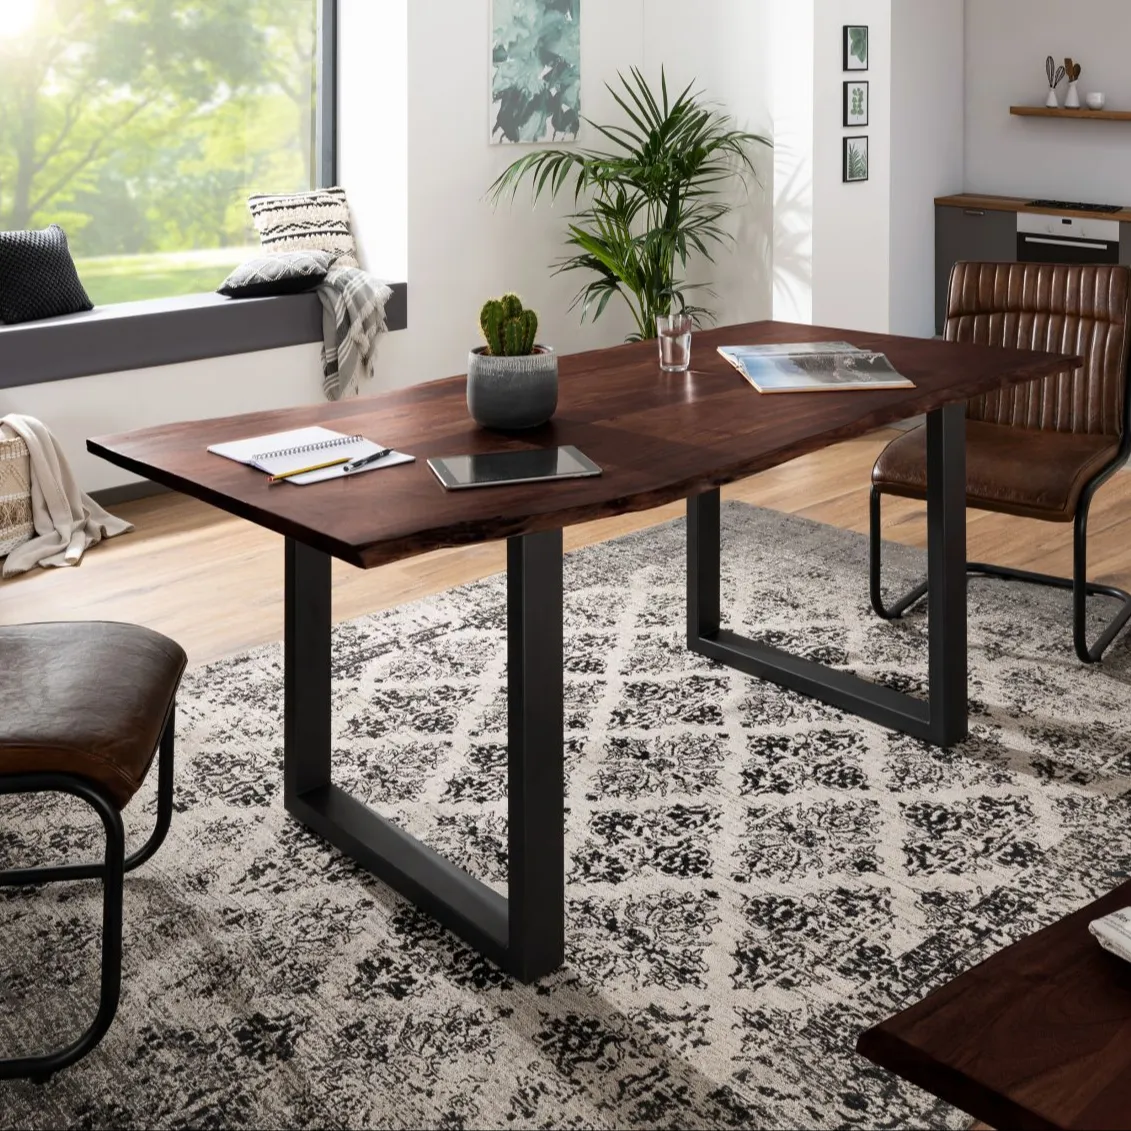 Meja makan persegi panjang Mode Tinggi atas kayu unik desainer mewah Modern meja makan produk laris